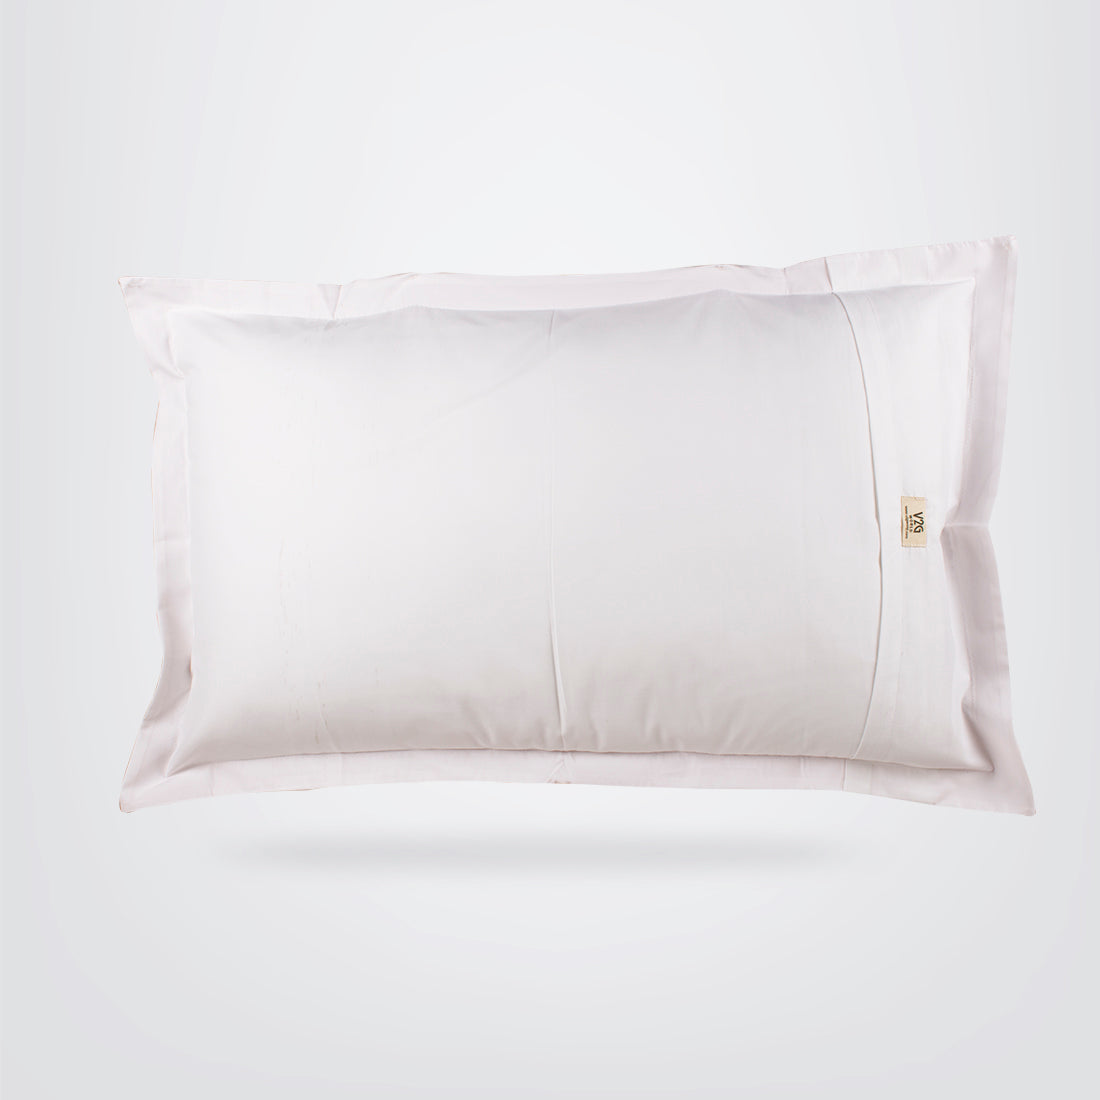 V2G Corner Me Printed Pillow Covers- Pair